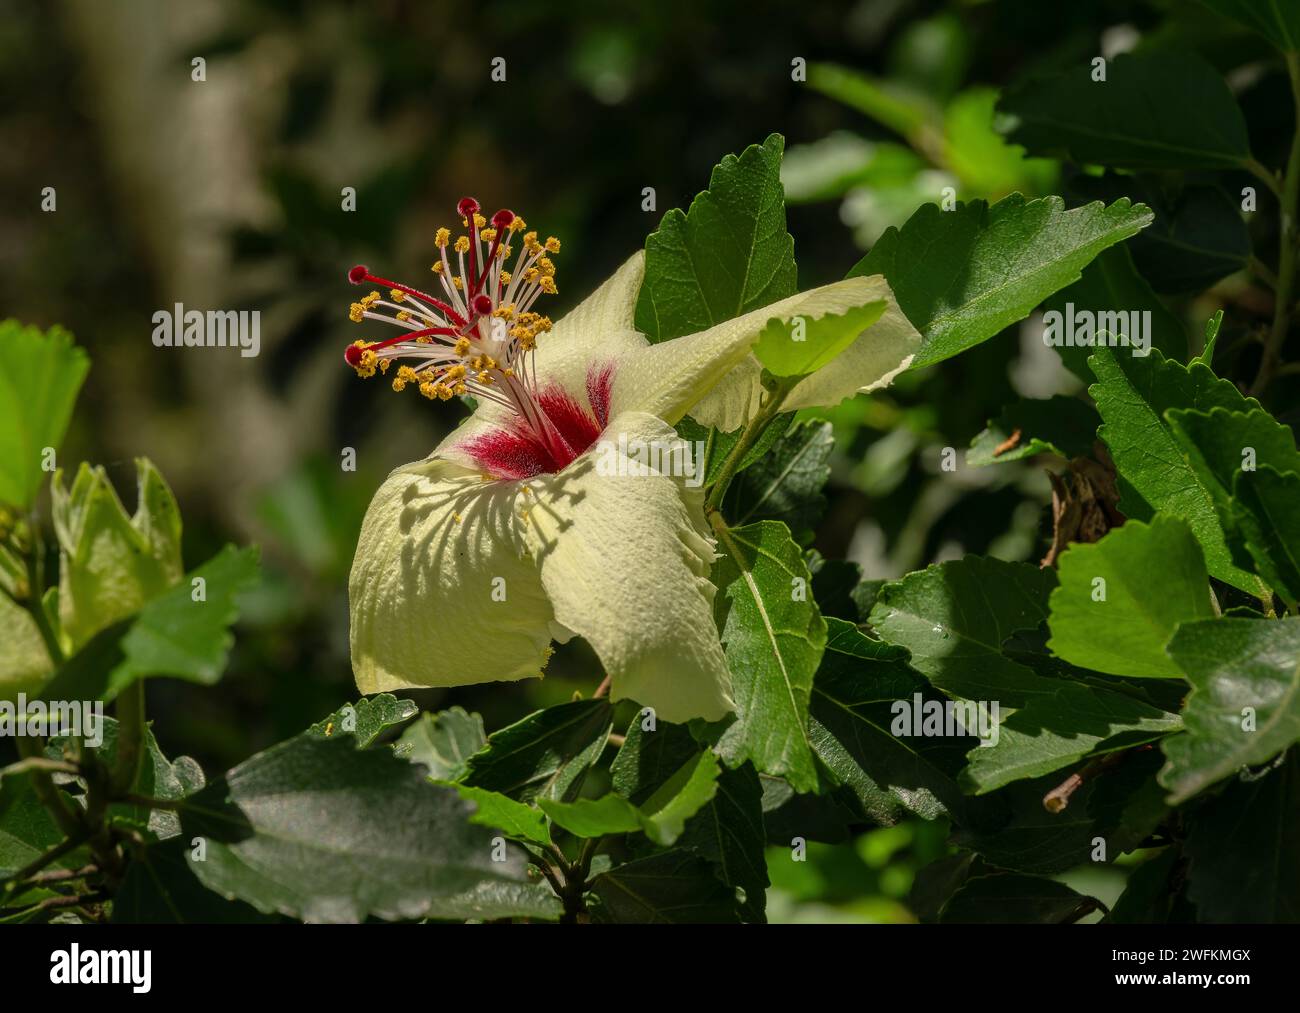 Hibiscus insularis, Phillip Island Hibiscus, in flower. Australia. Stock Photo